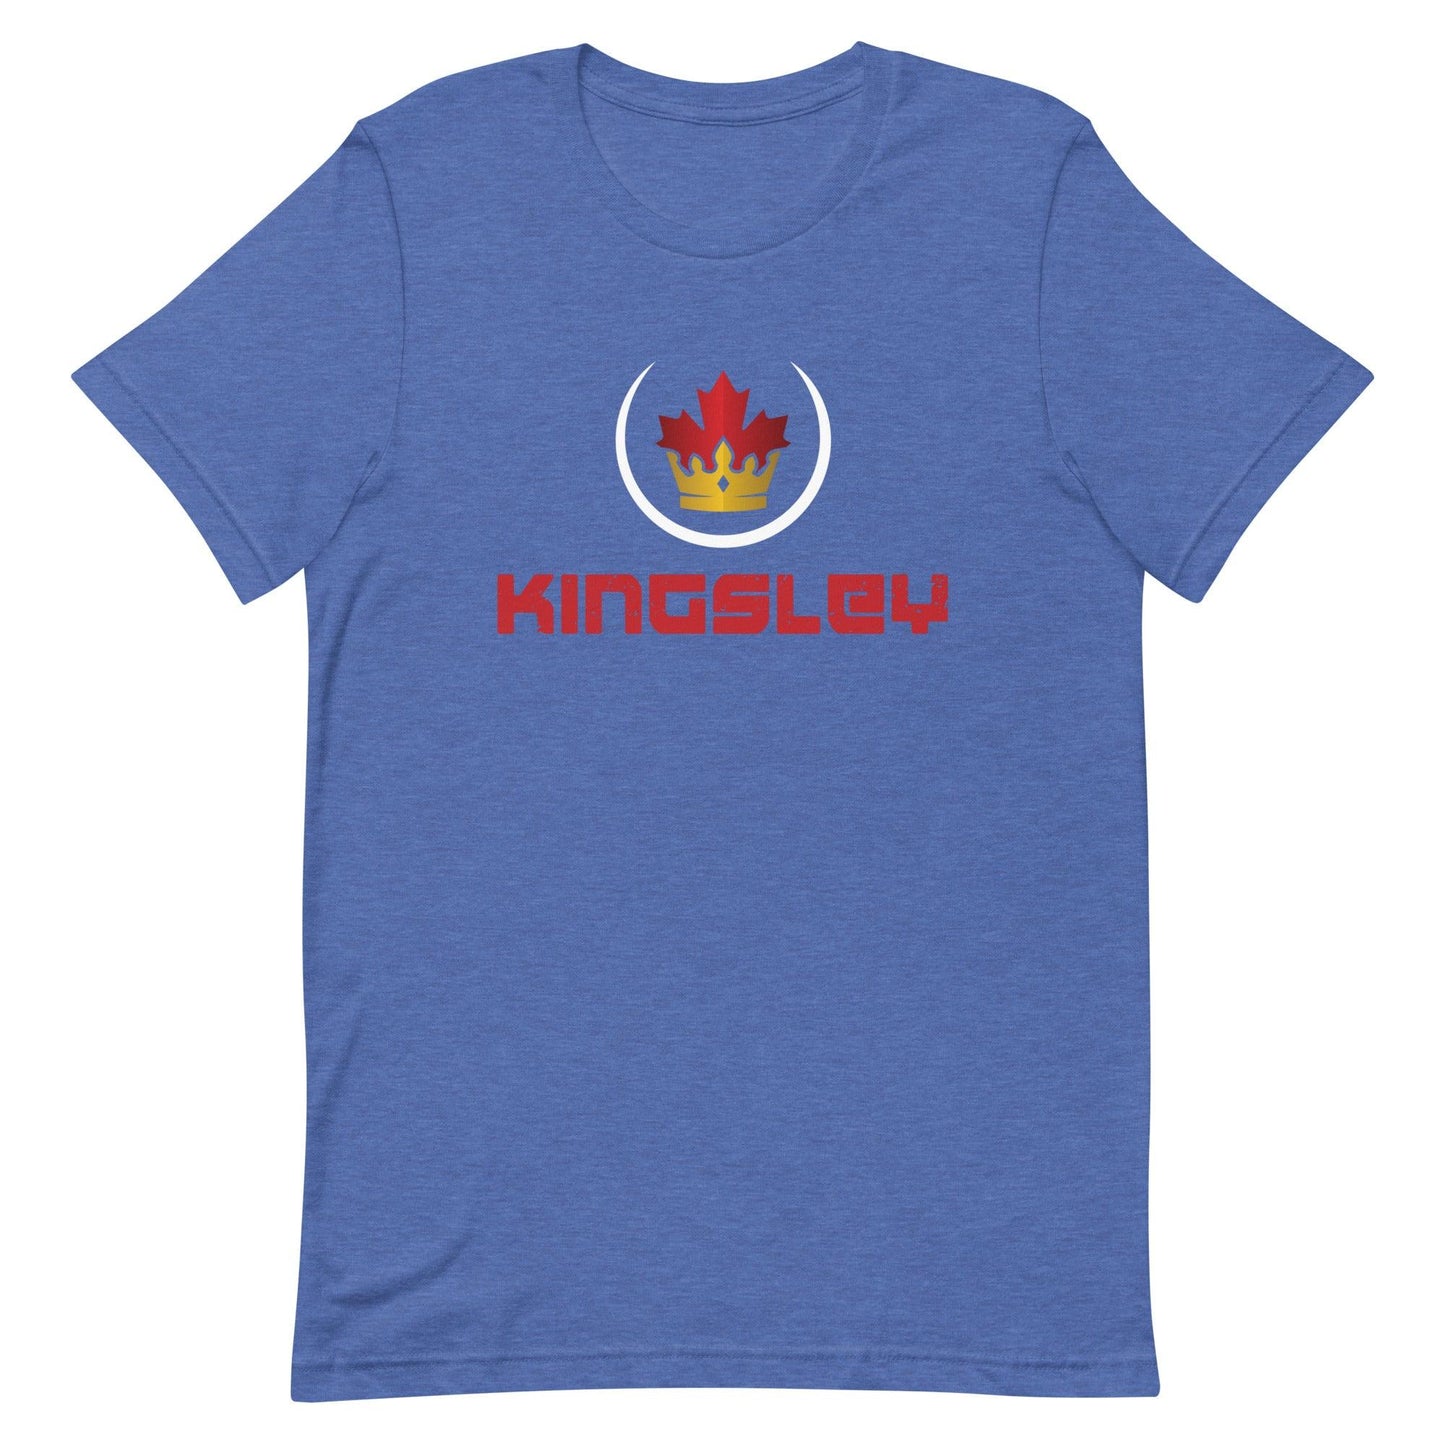 Aaron Kingsley Brown "Royalty" t-shirt - Fan Arch